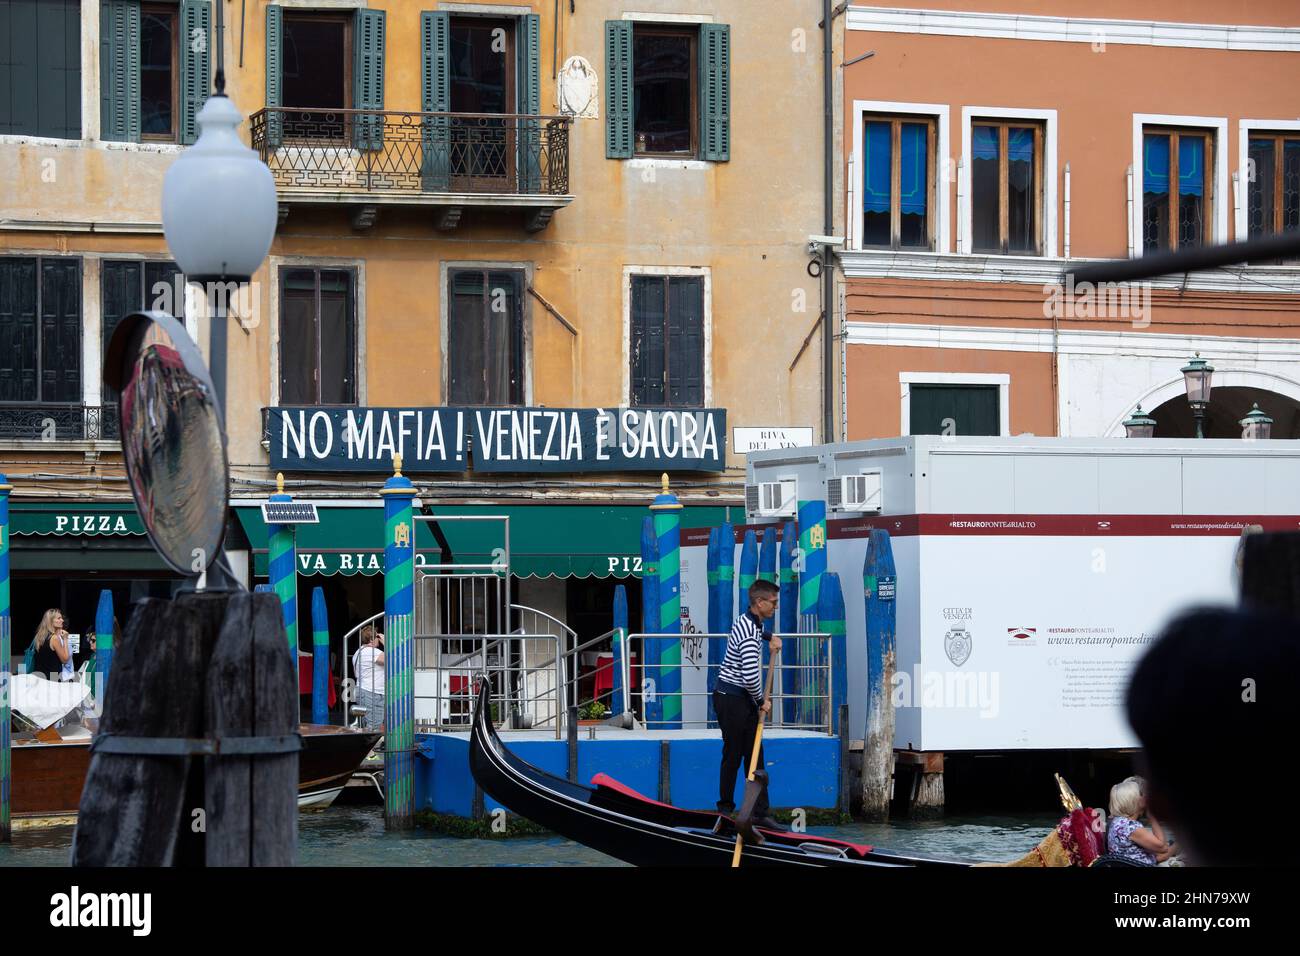 Une scène de rue de Venise avec un panneau montrant un peu de mépris pour la mafia Banque D'Images